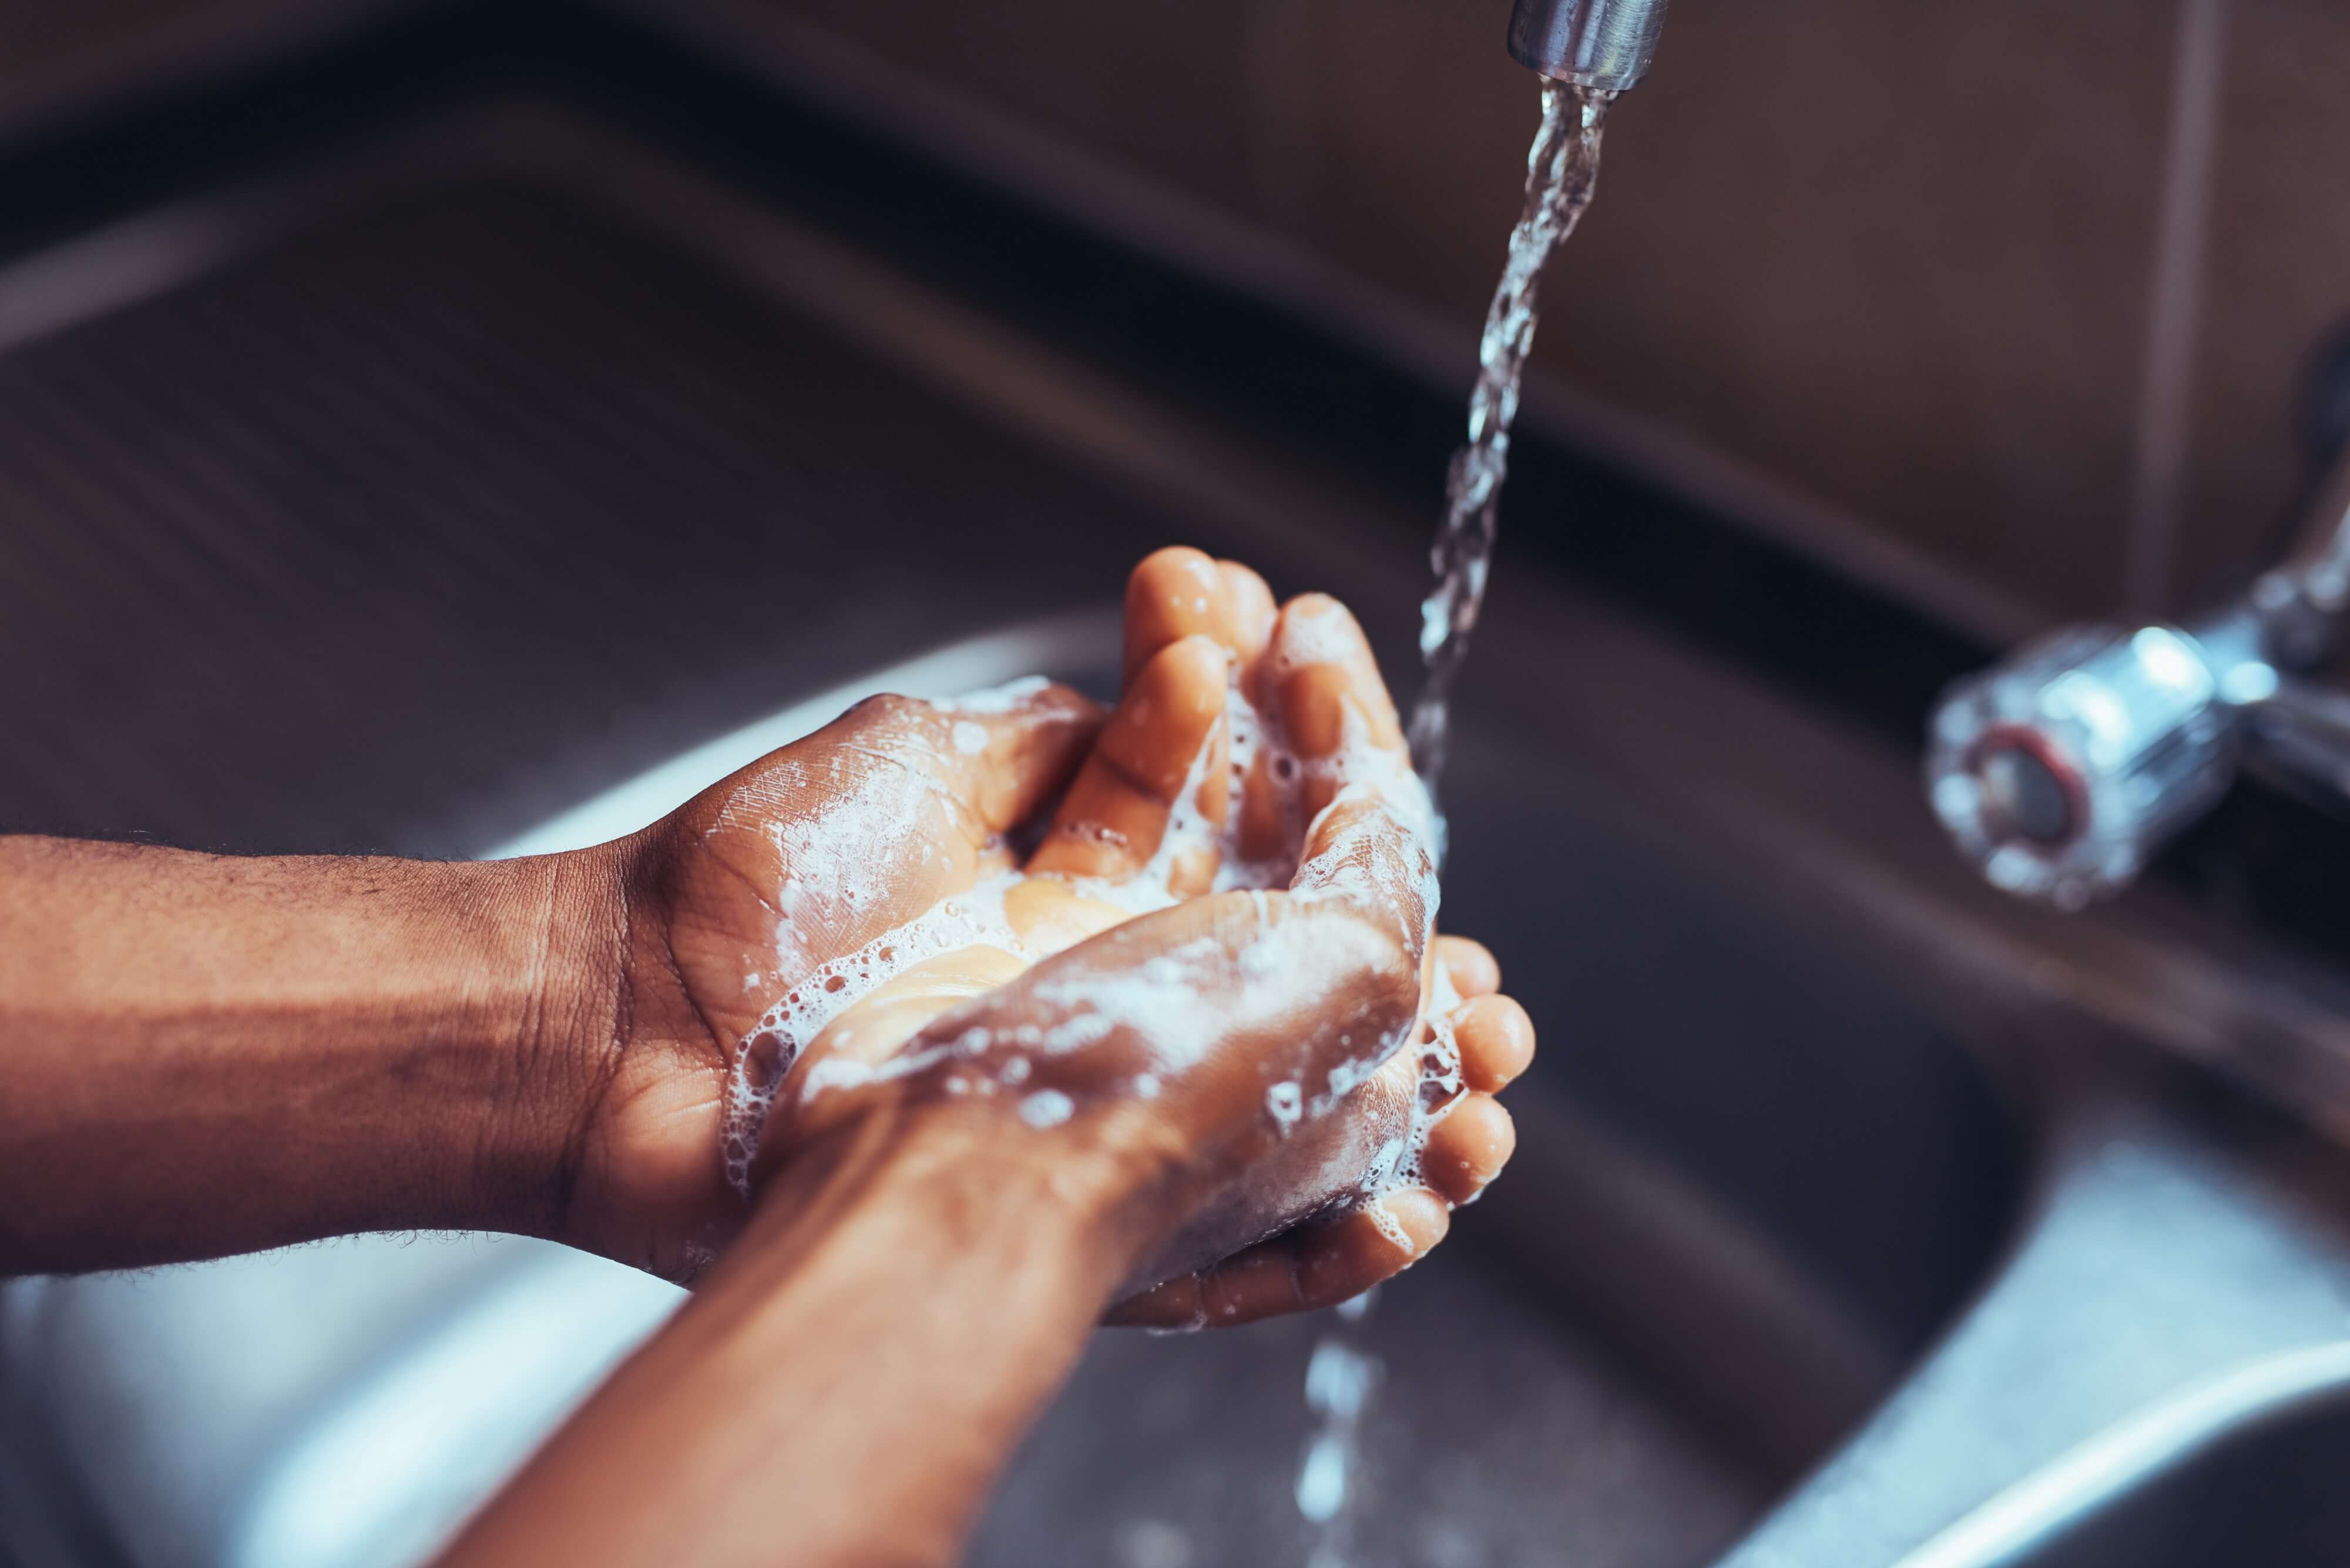 غسل اليدين يساعد على اتخاذ القرارات